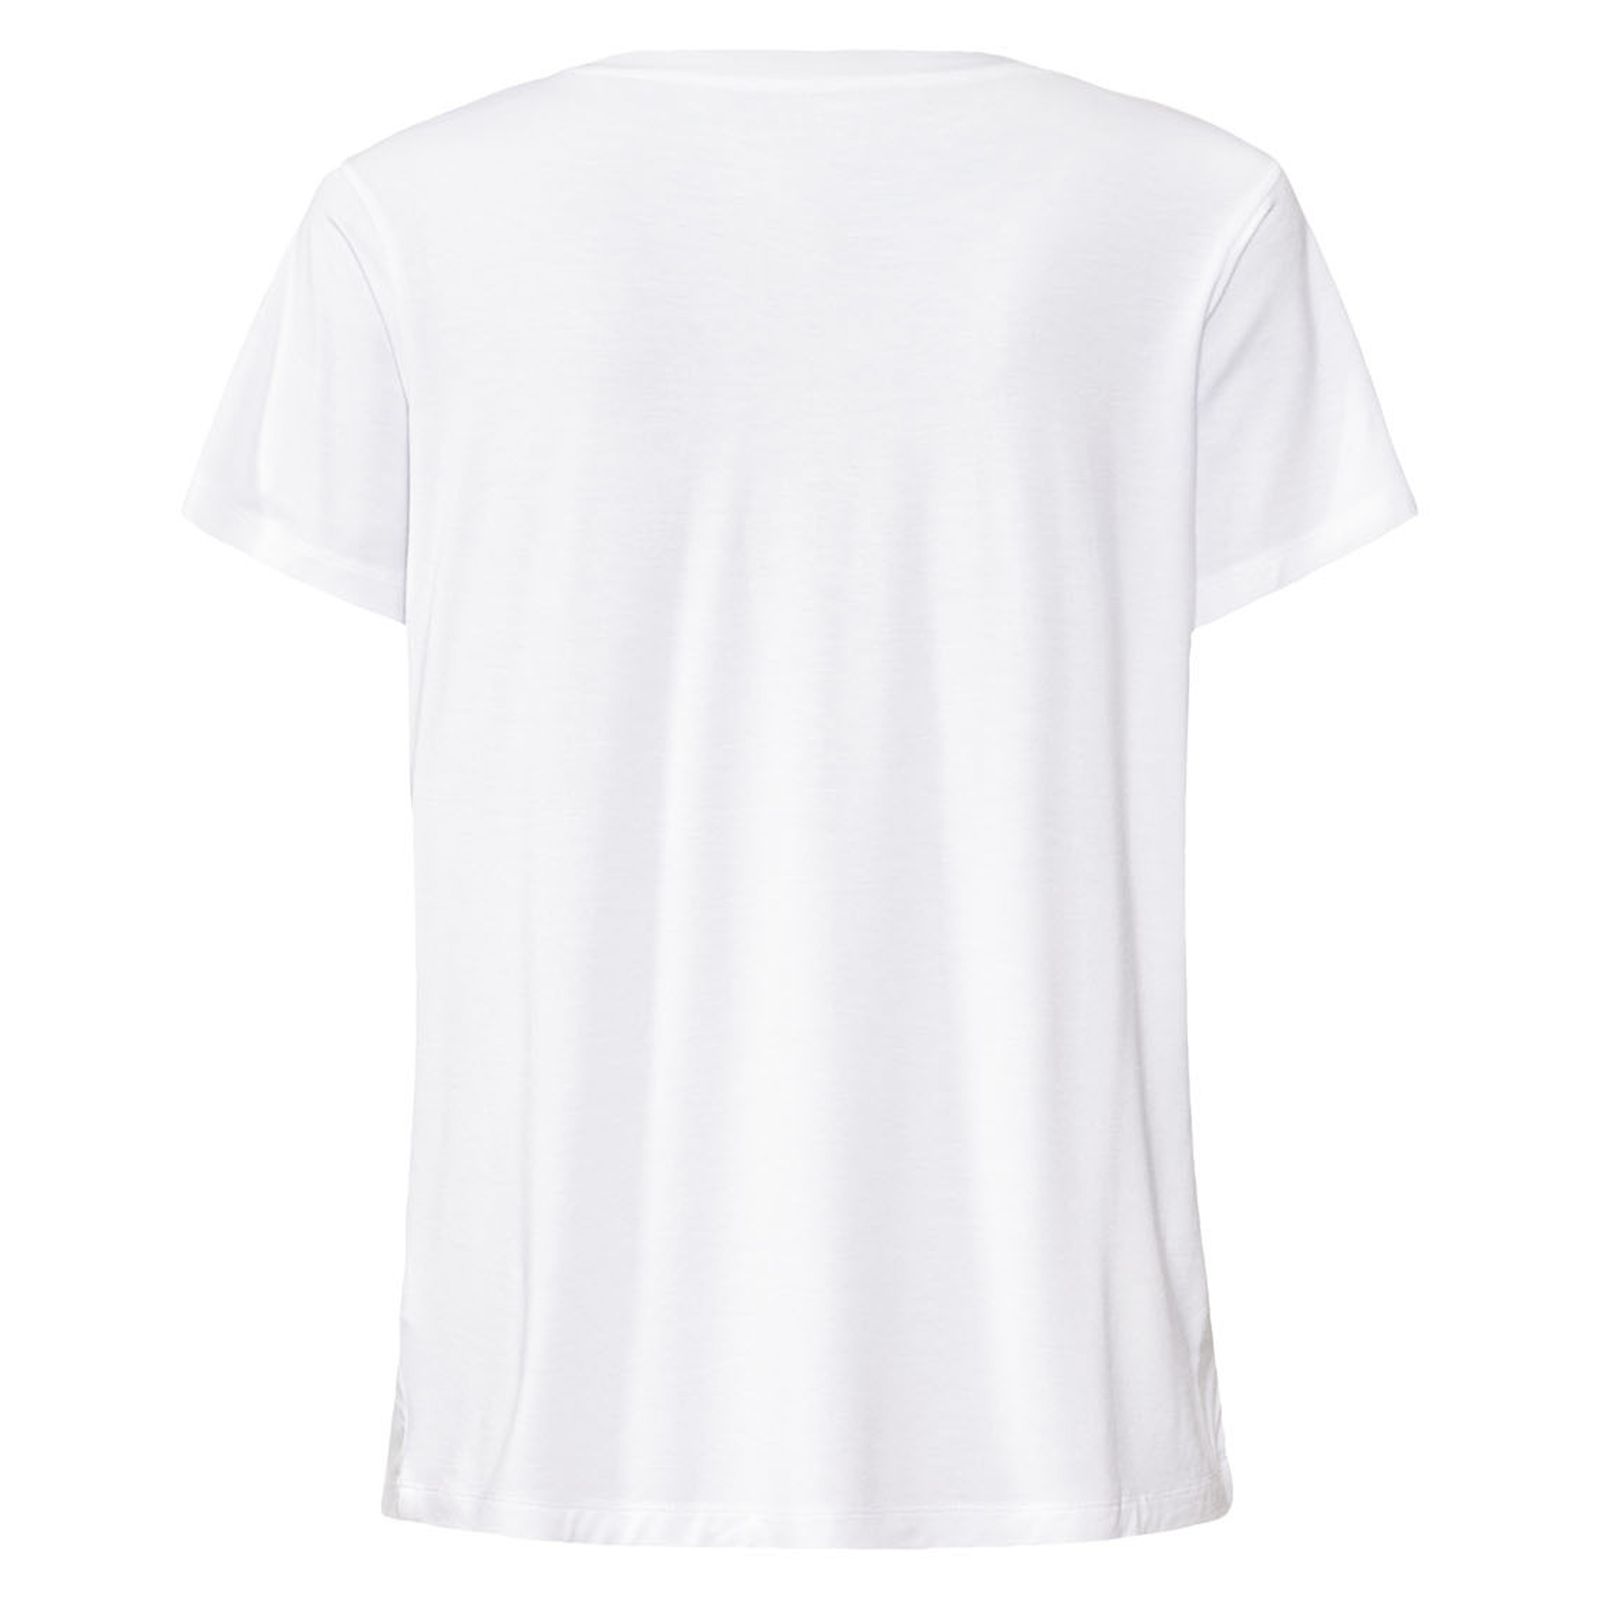 تی شرت آستین کوتاه زنانه مدل ADPT -  - 2